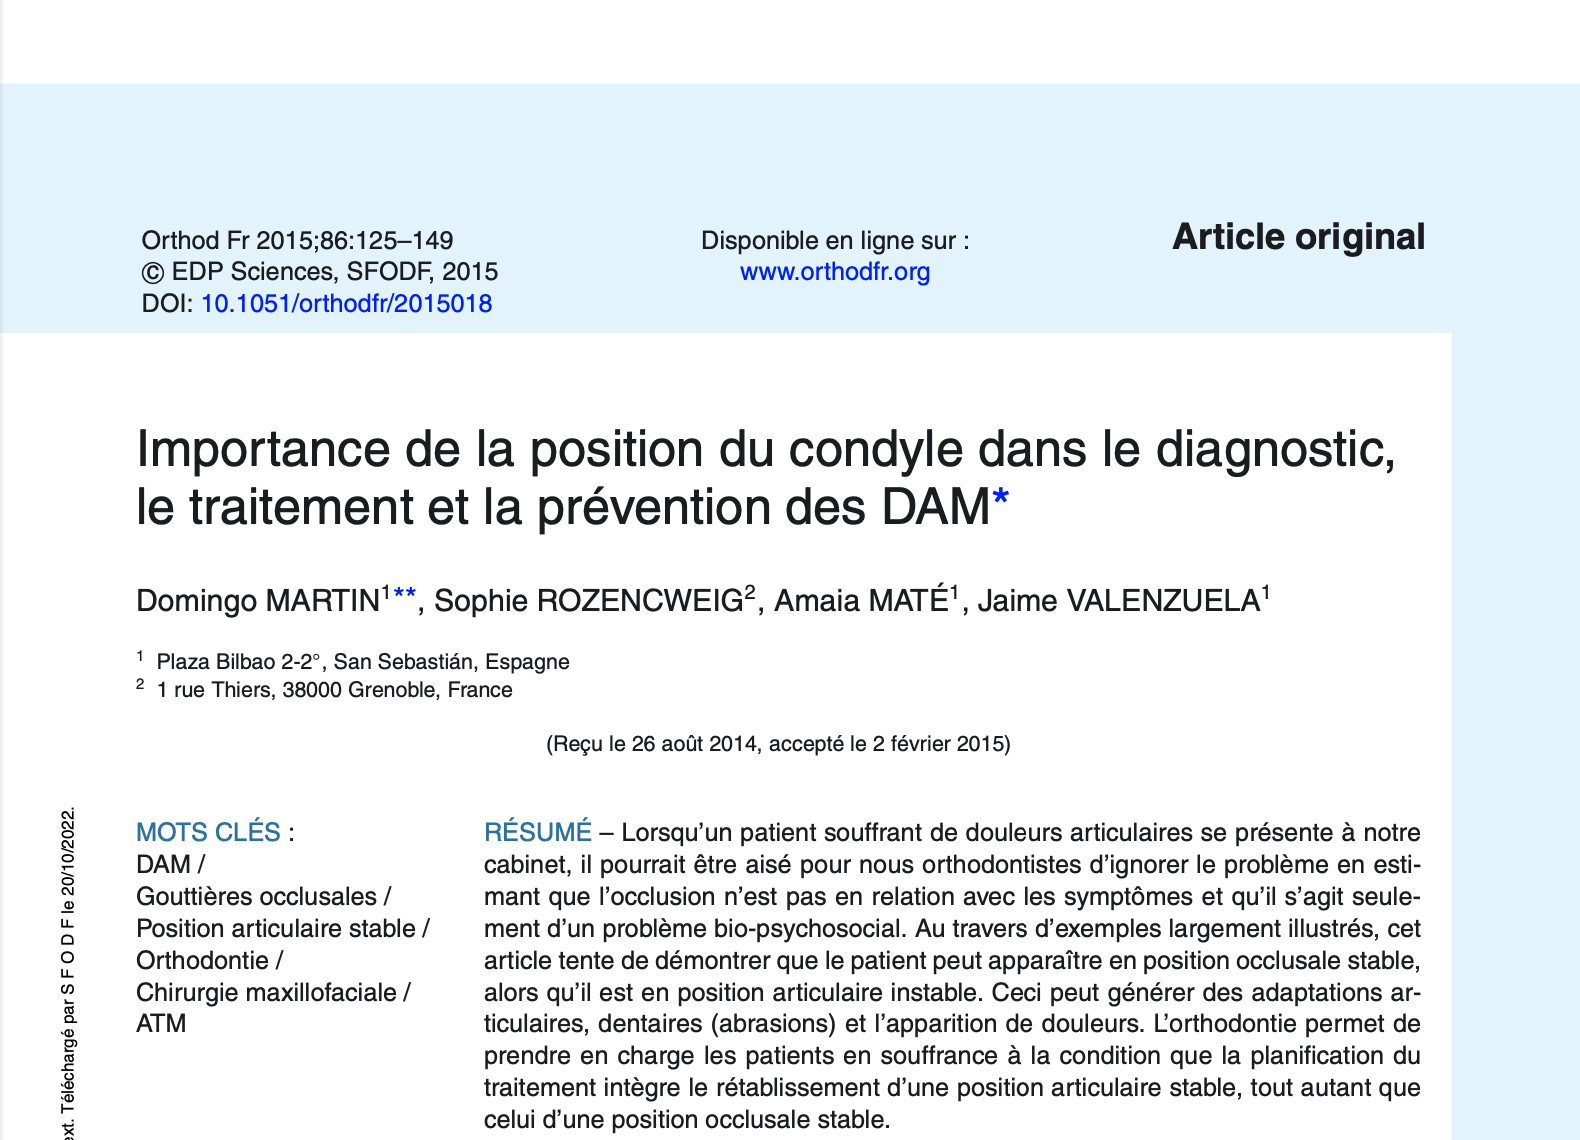 Importance de la position du condyle dans le diagnostic, le traitement et la prévention des DAM* 2015